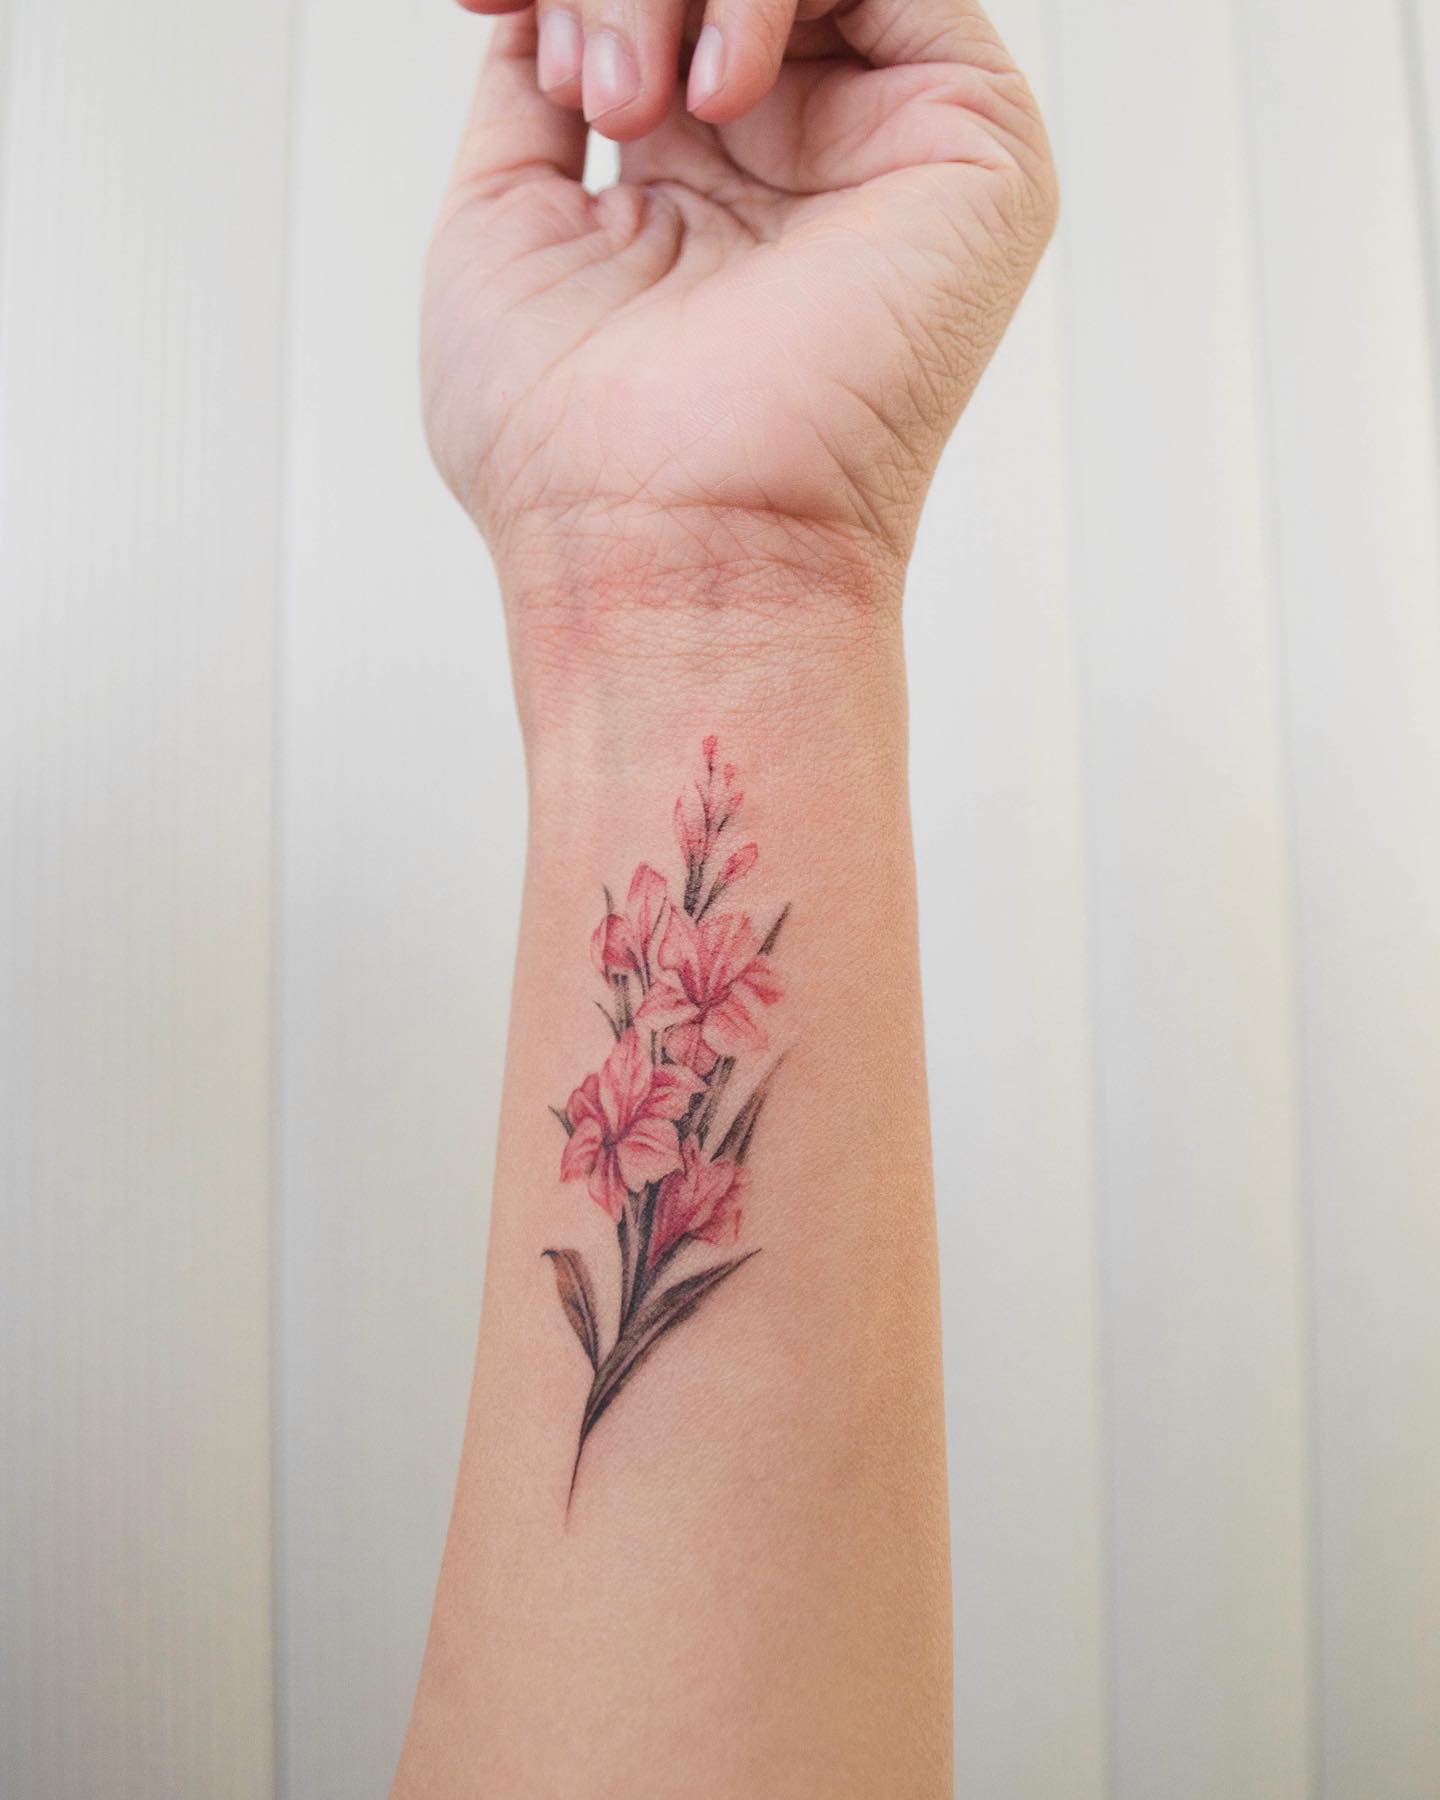 Elegant Floral Tattoo on Wrist